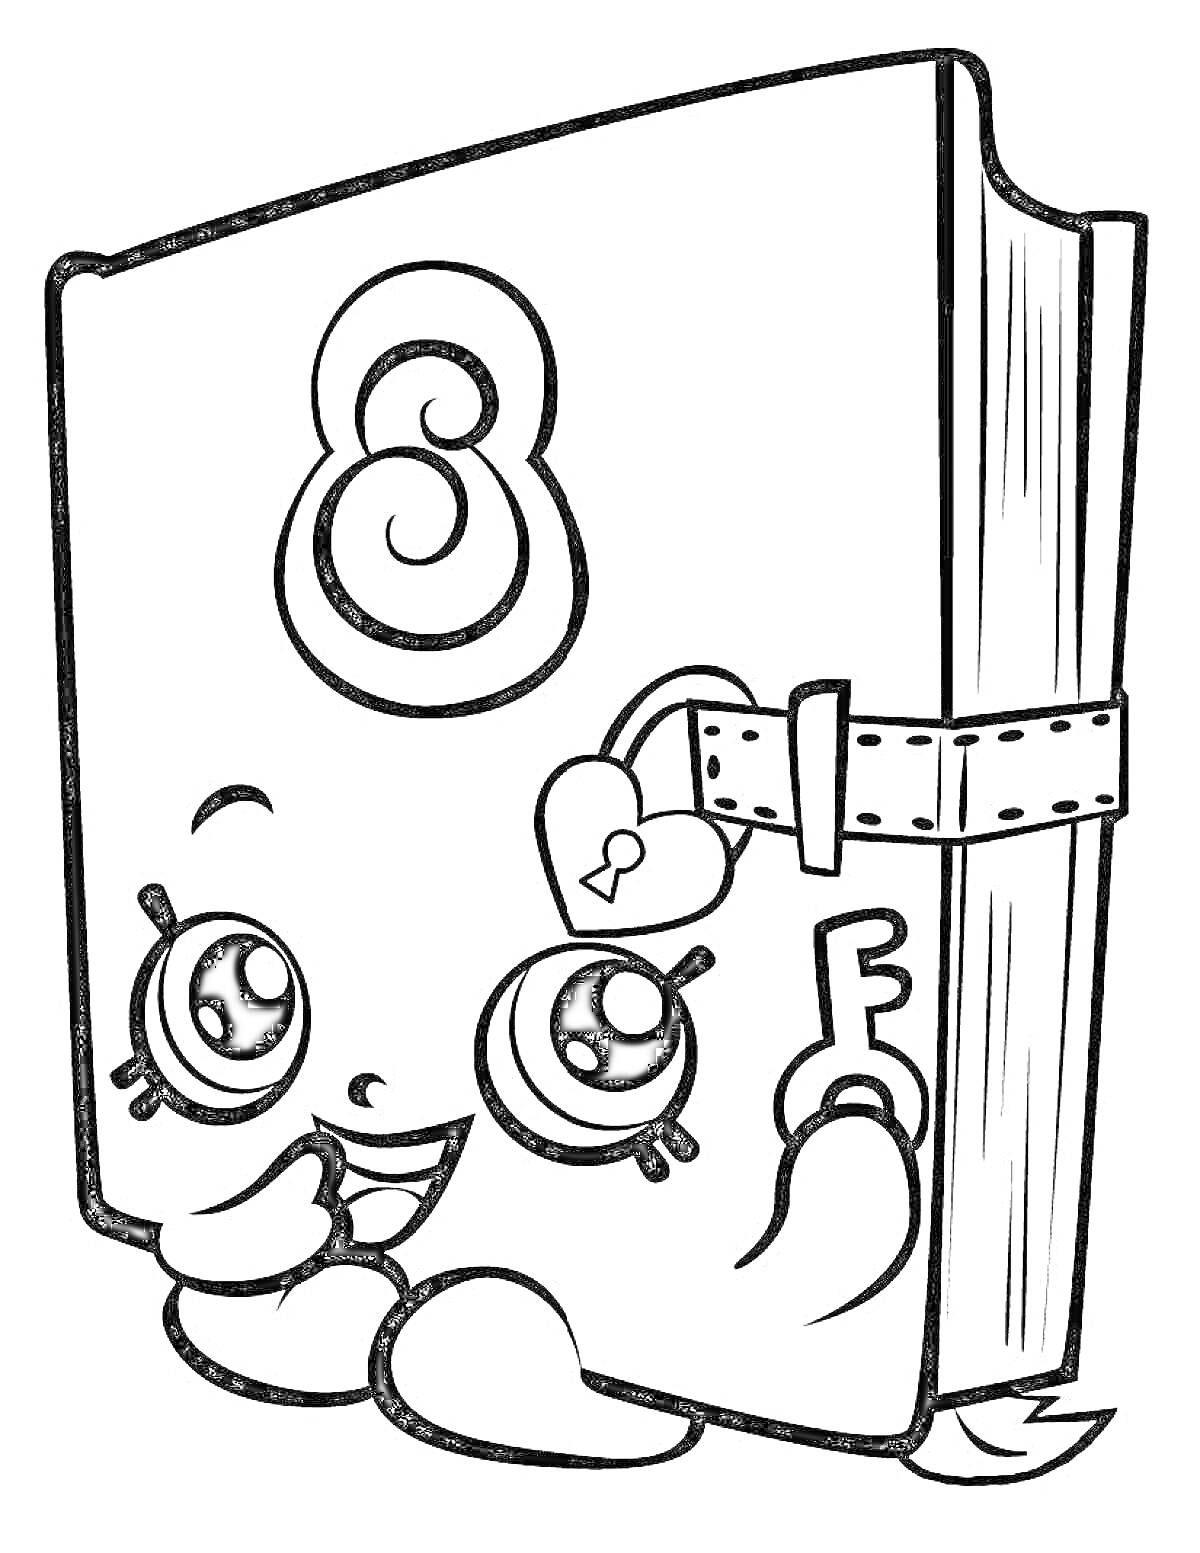 Дневник с глазками и ключиком в руках, цифра 8 на обложке, ремешок с замочком в виде сердечка